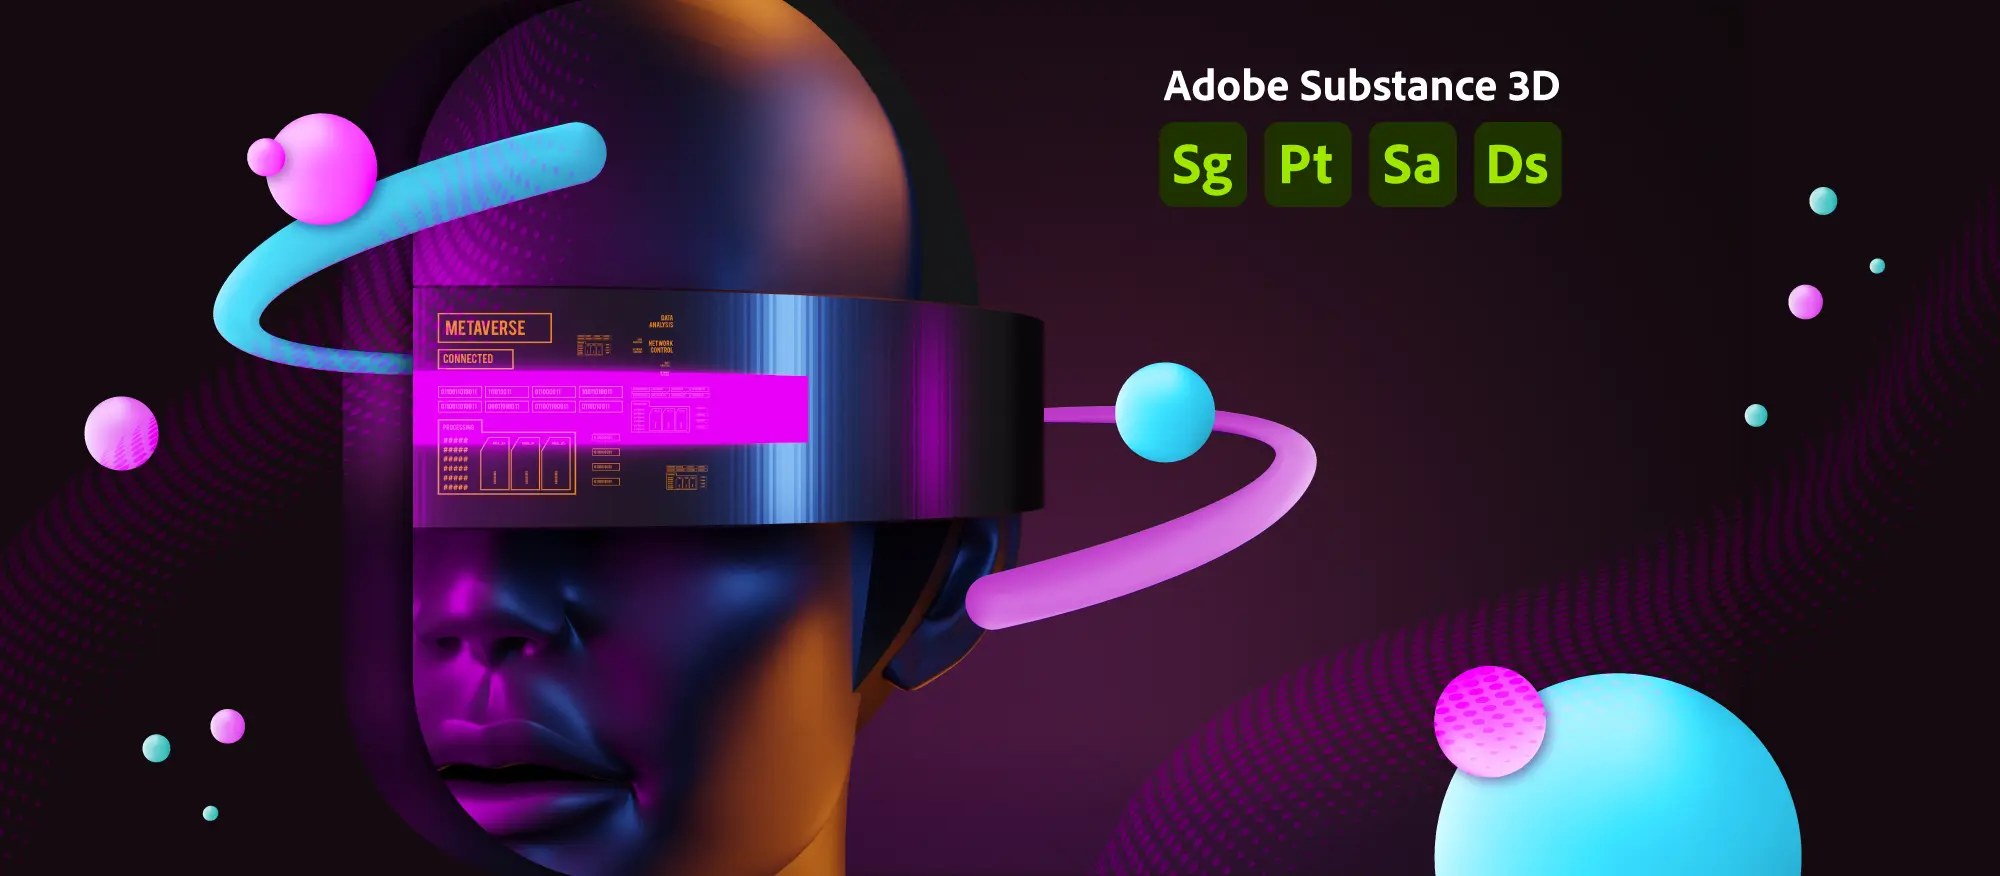 Imagen 3D con fondo morado, mitad de rostro de una persona con gafas de realidad virtual y elementos tecnologicos